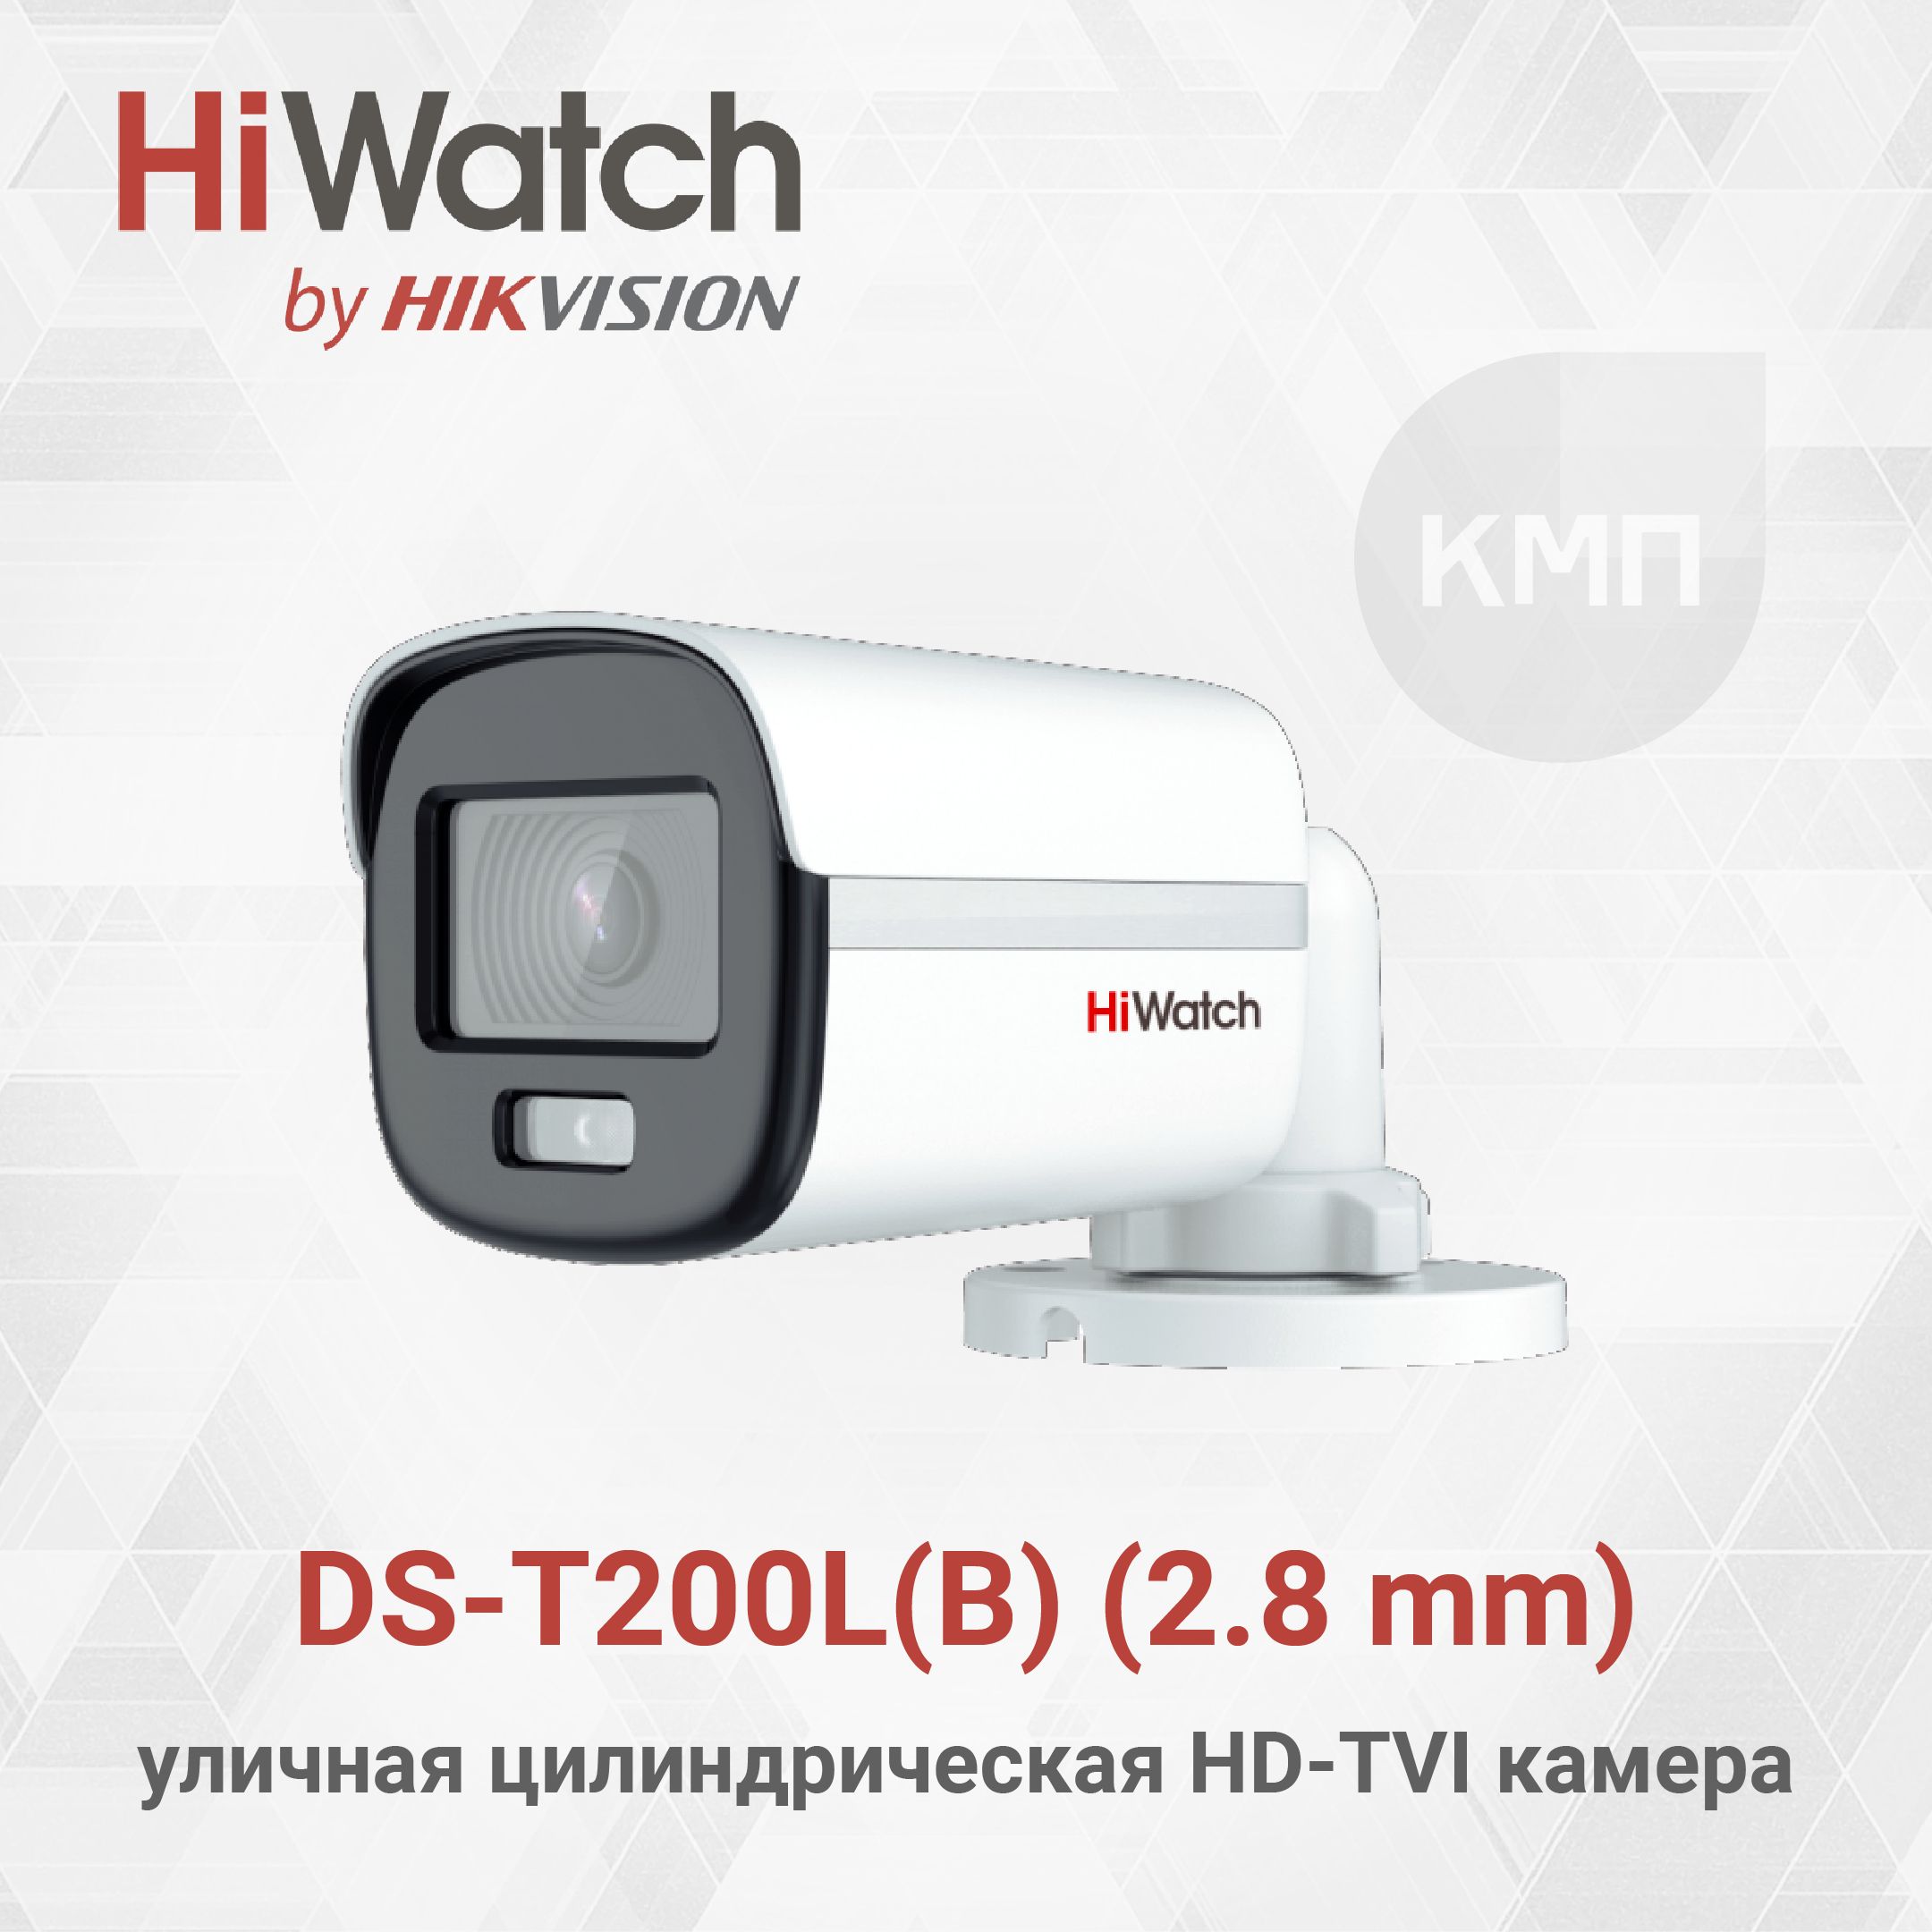 HiwatchDS-T200L(B)(2.8mm)2МпуличнаяцилиндрическаяHD-TVIкамерасLED-подсветкойдо20м,встроенныммикрофоном(AoC)итехнологиейColorVu